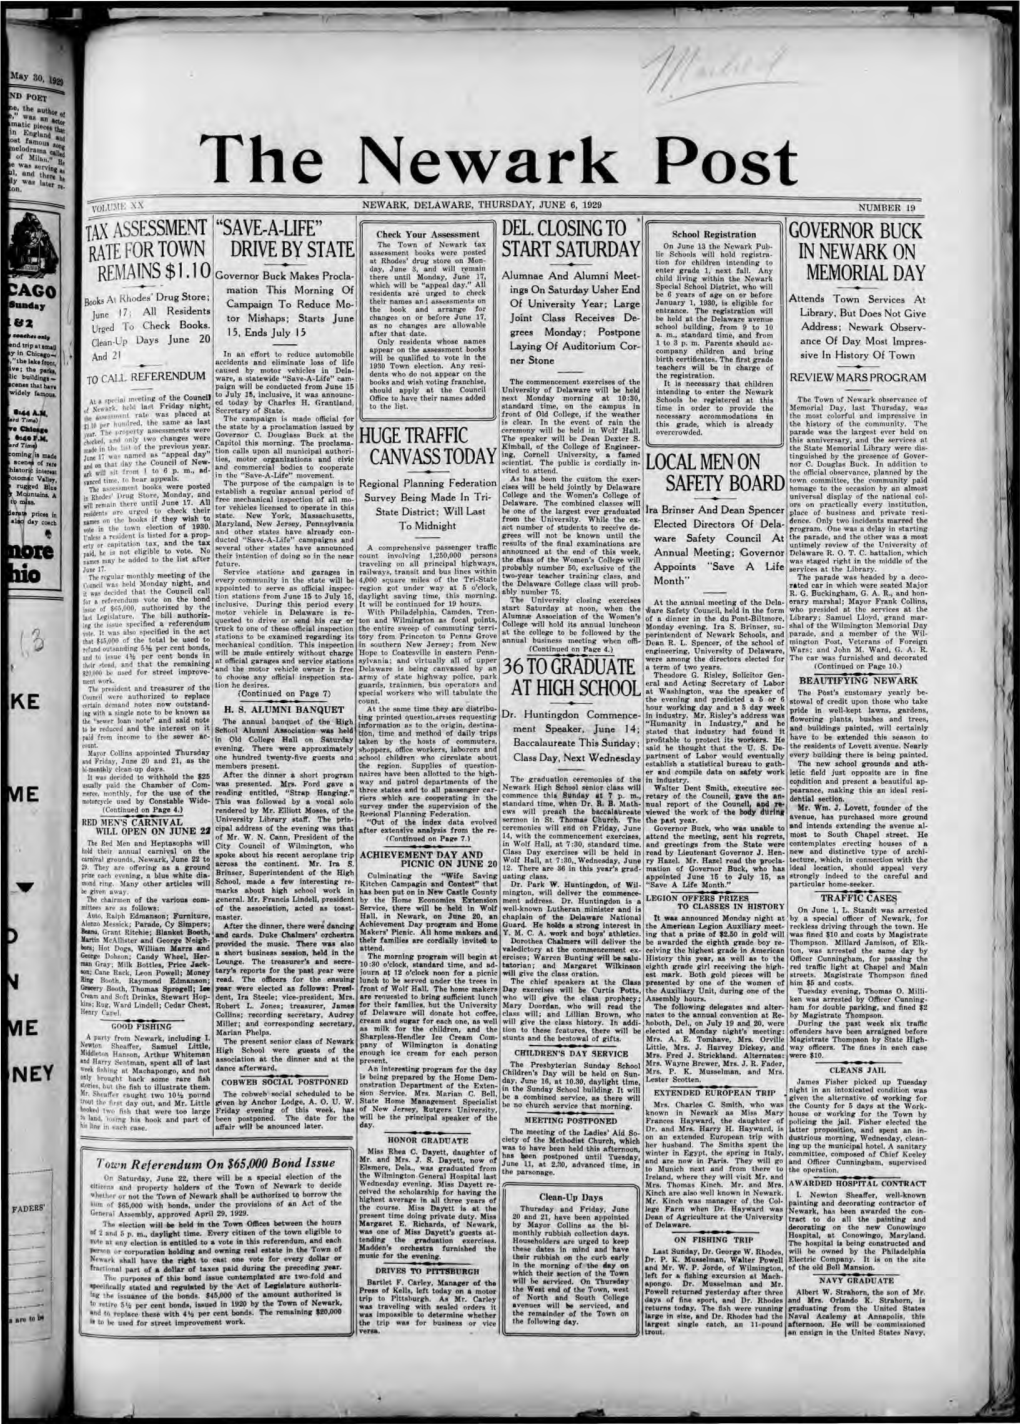 The Newark Post =-:OL :\11~ Xx NEWARK, DELAWARE, THURSDAY, JUNE 6, 1929 NUMBER 19